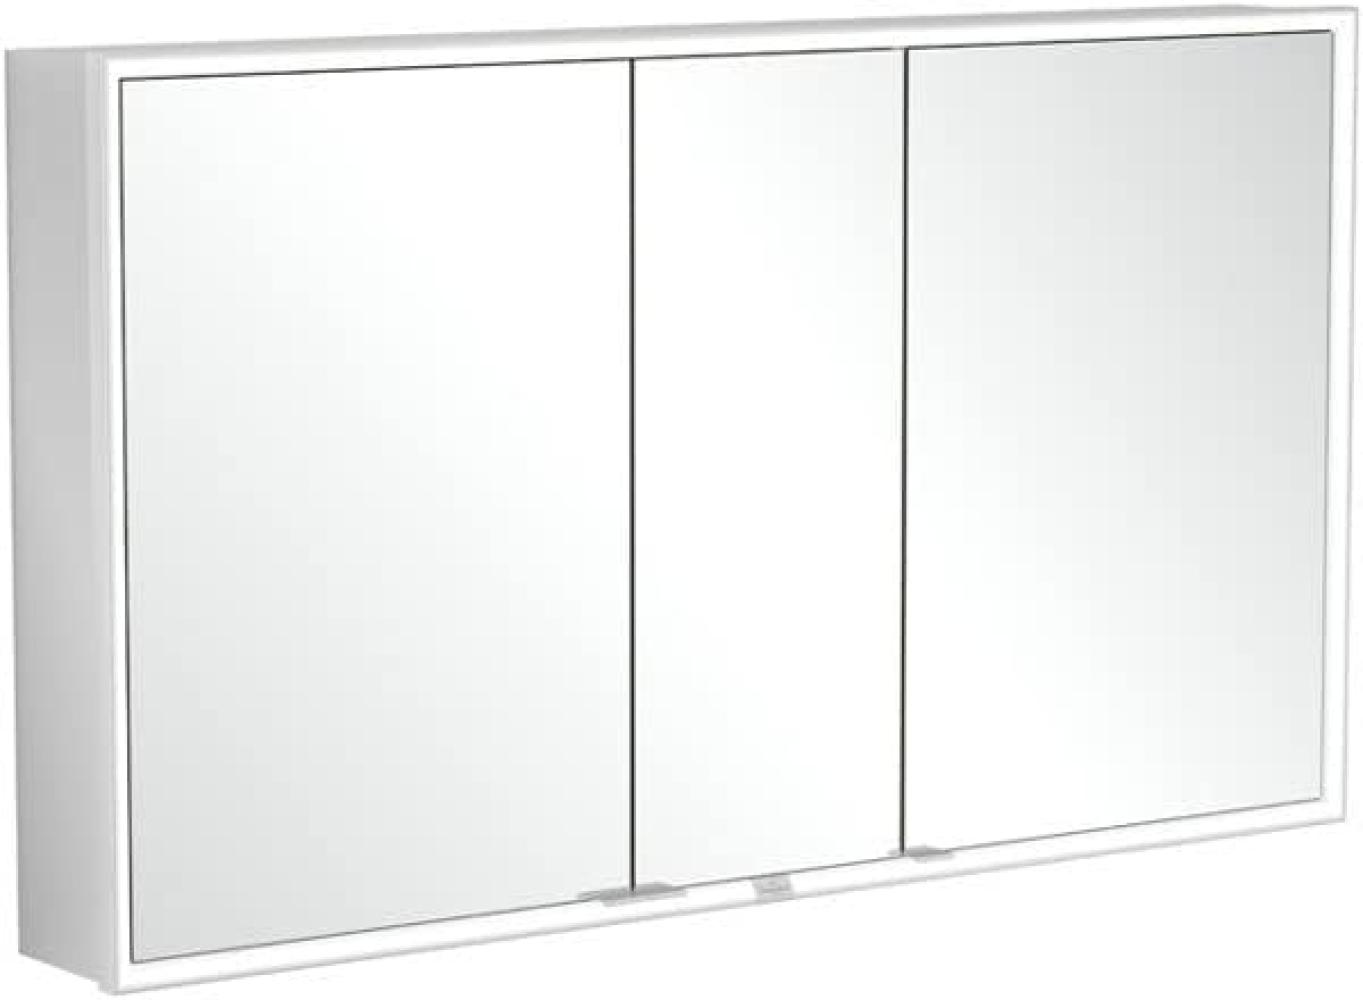 Villeroy & Boch My View Now, Spiegelschrank für Wandeinbau mit Beleuchtung, 1300x750x167,5 mm, mit Ein-/Ausschalter, Smart Home fähig, 3 Türen, A45813 - A4581300 Bild 1